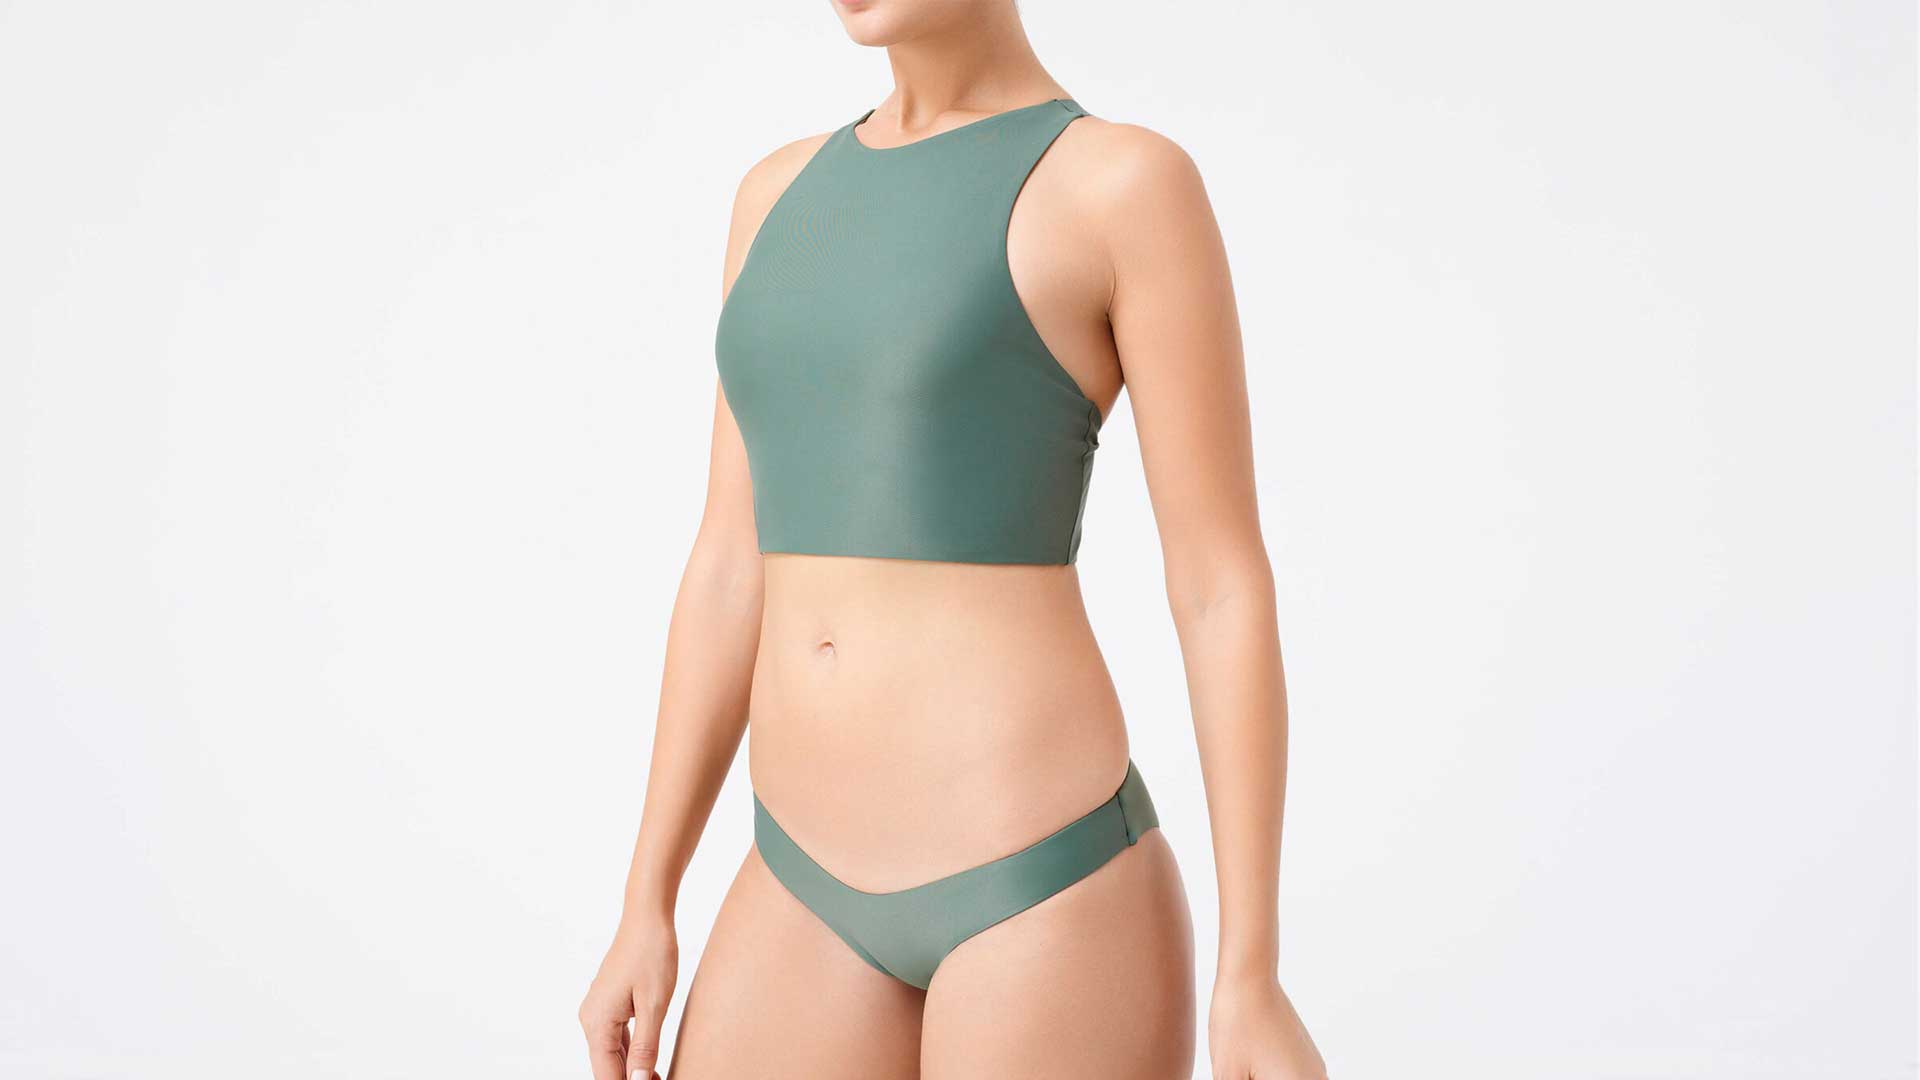 Green bikini for women